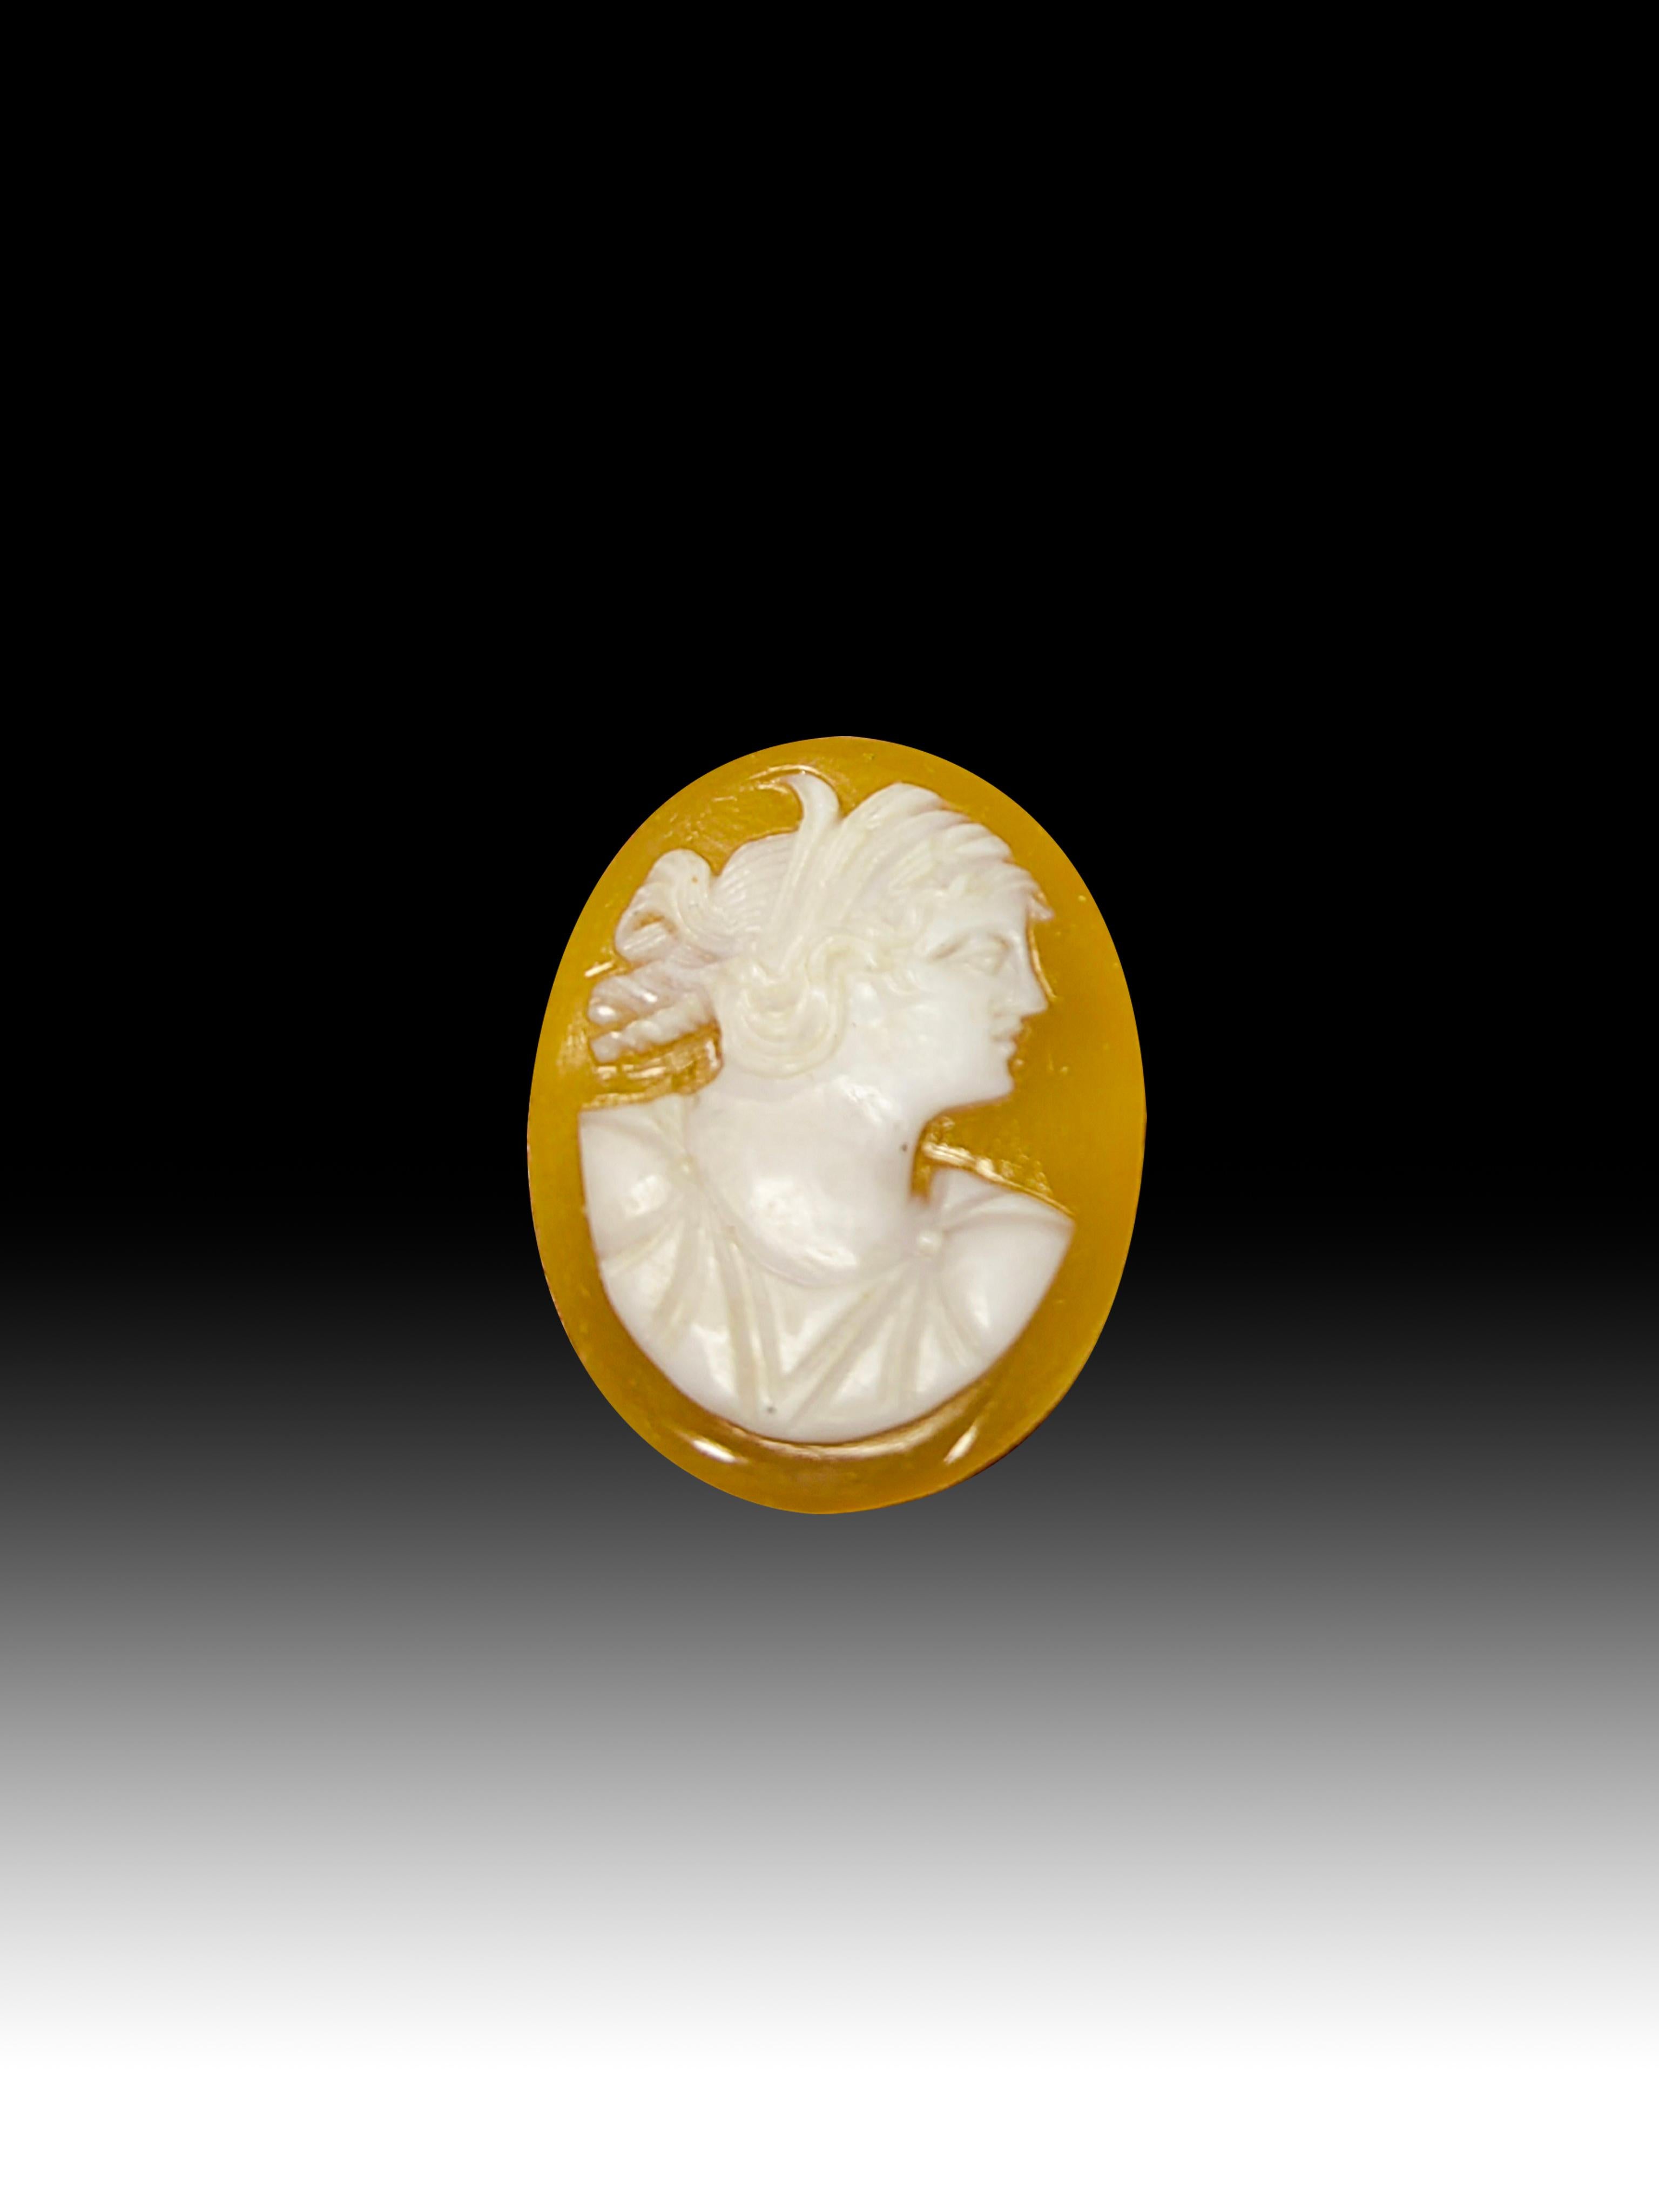 1920er Jahre Kamee
Elegante Kamee aus den 1920er Jahren, geschnitzt in einer Muschel und verziert mit vergoldetem Messing.Abmessungen:2x1,5x0,5 cm